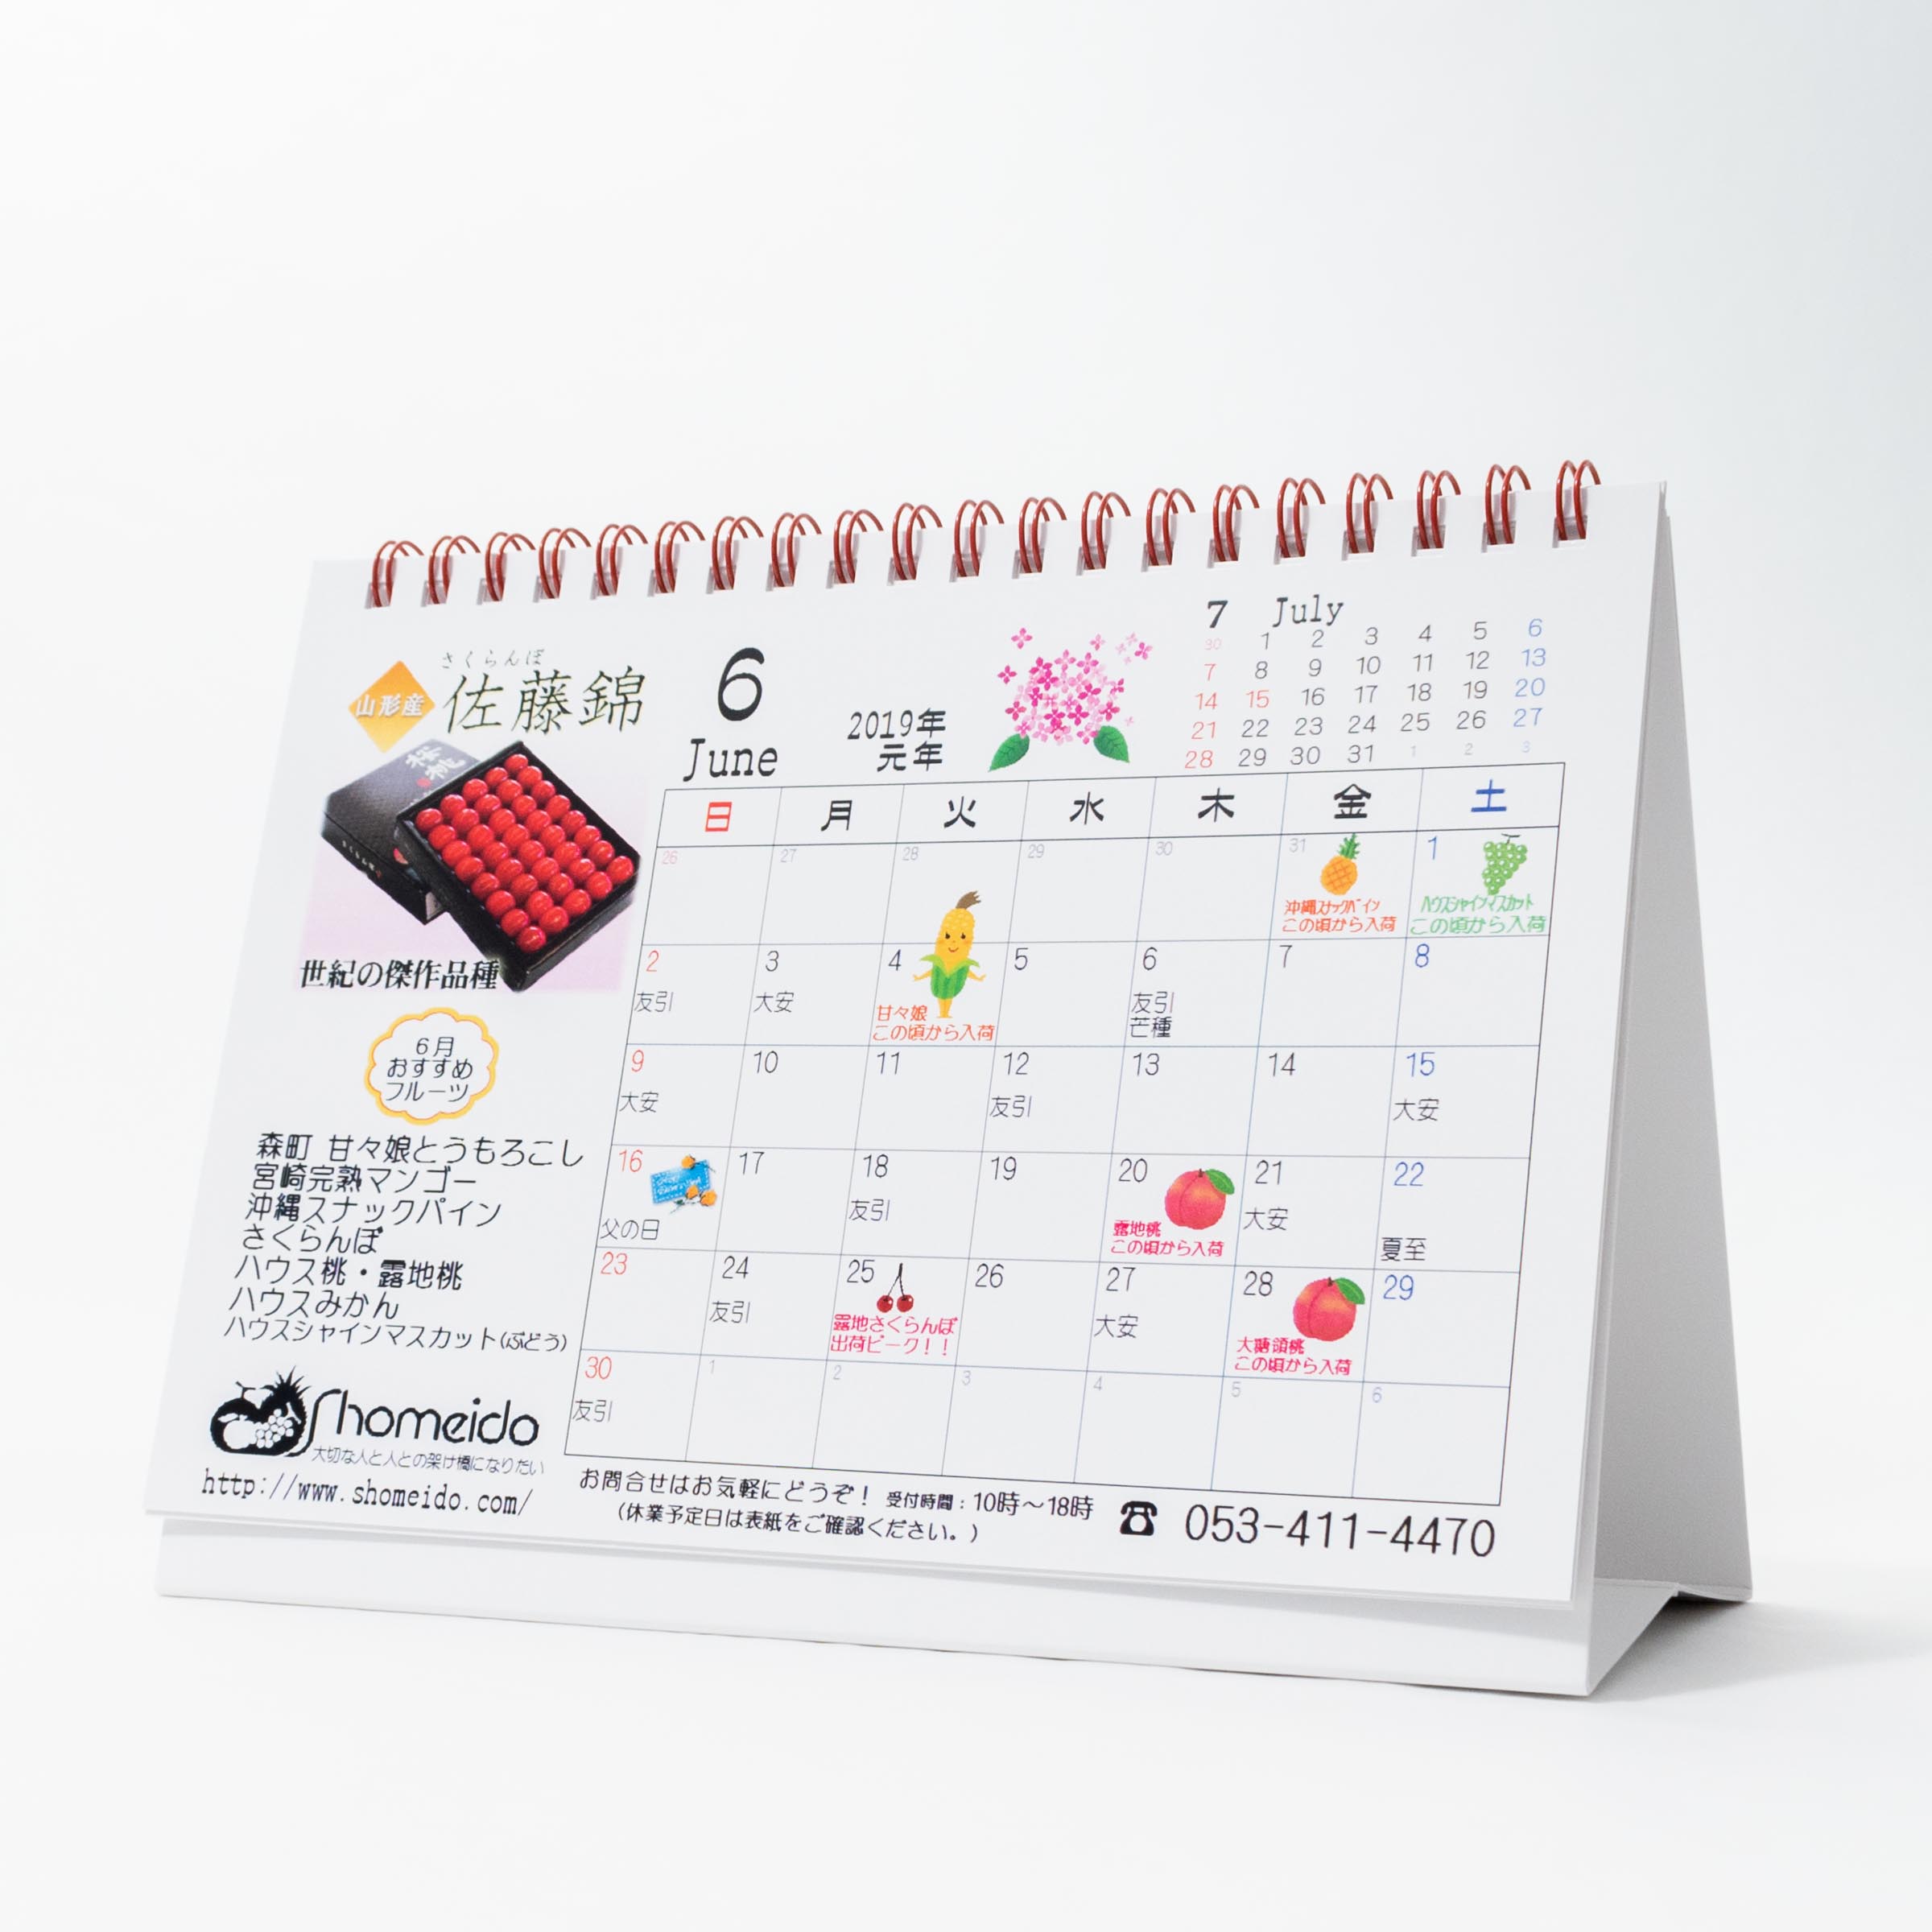 「株式会社正明堂 様」製作のオリジナルカレンダー ギャラリー写真2